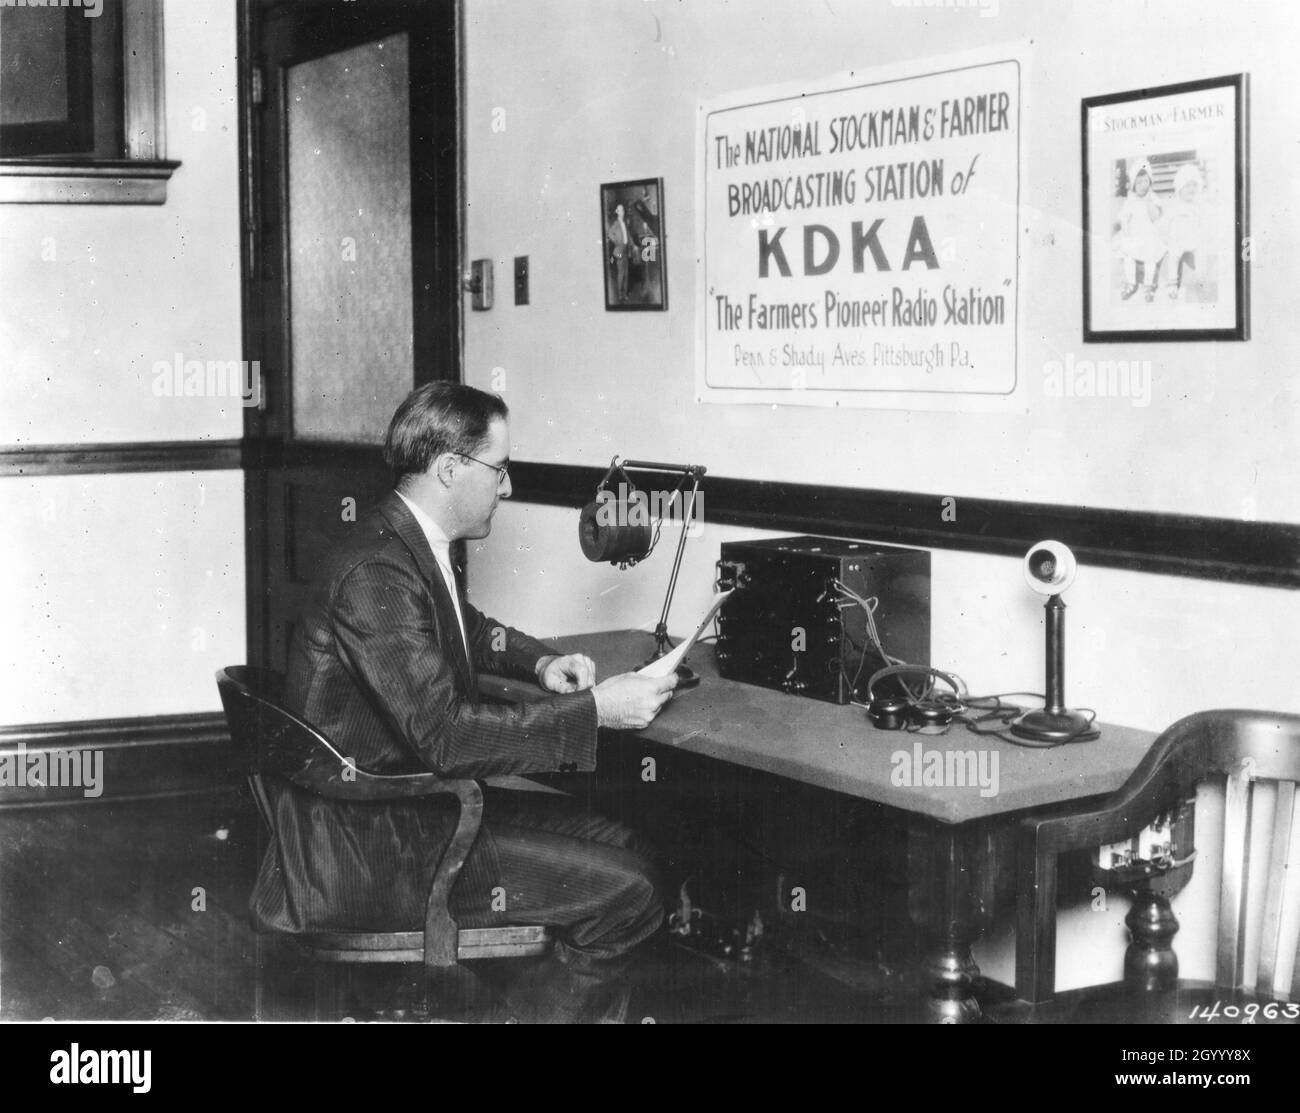 Frank Mullen, annunciatore, viene mostrato al microfono della prima stazione radio americana, KDKA, nel 1922. Pittsburgh, Pennsylvania. Foto Stock